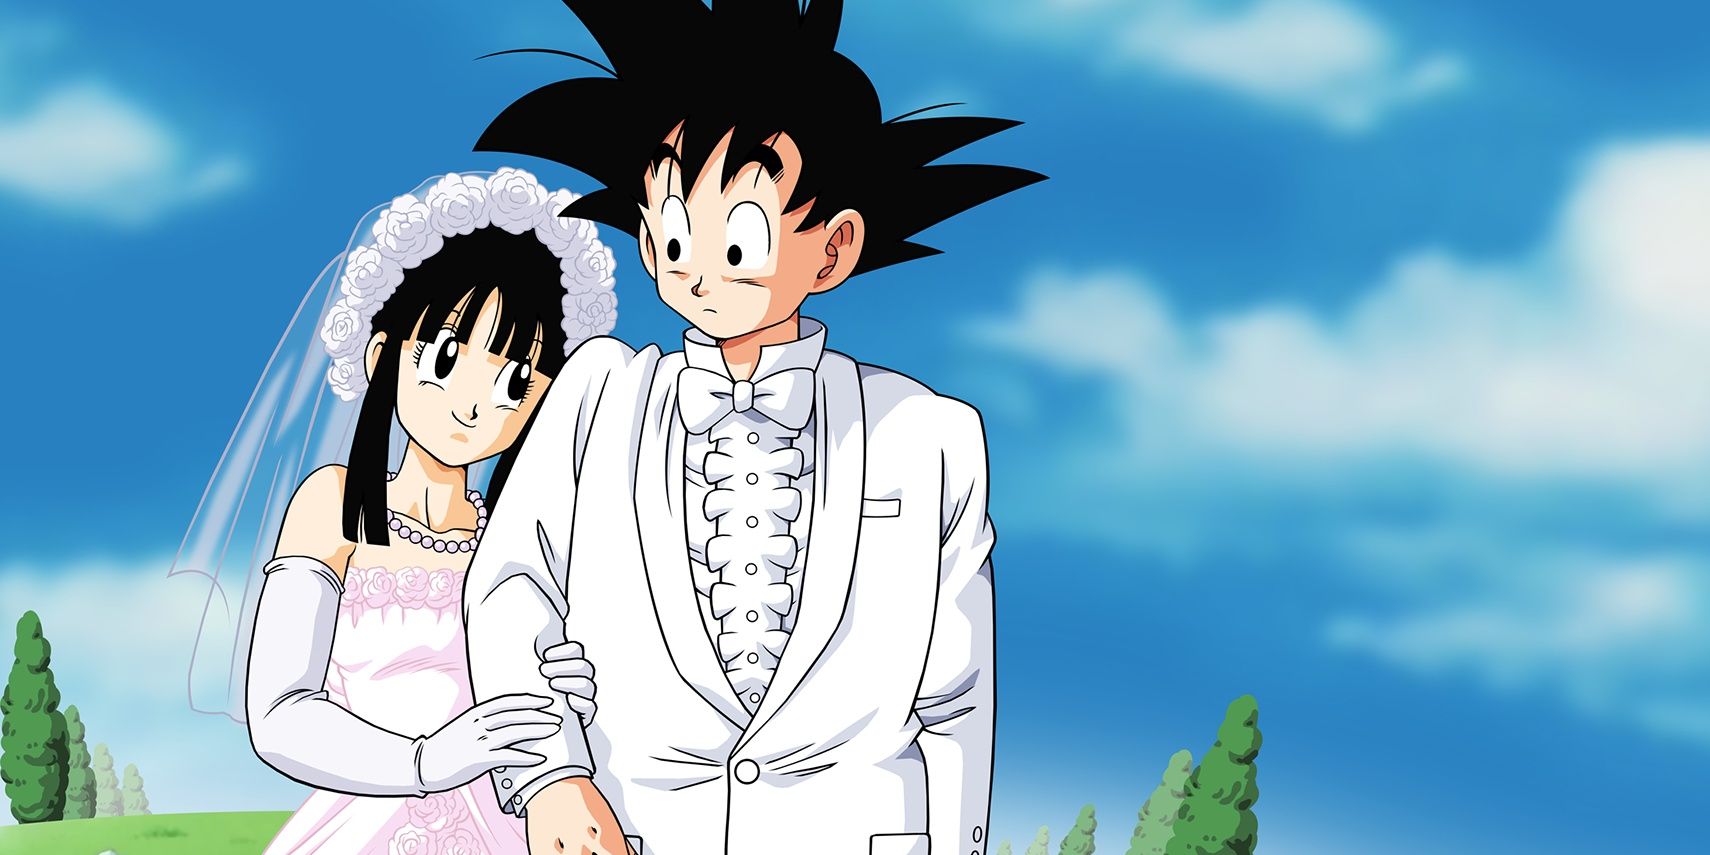 Dragon Ball Goku and Chichi on their wedding